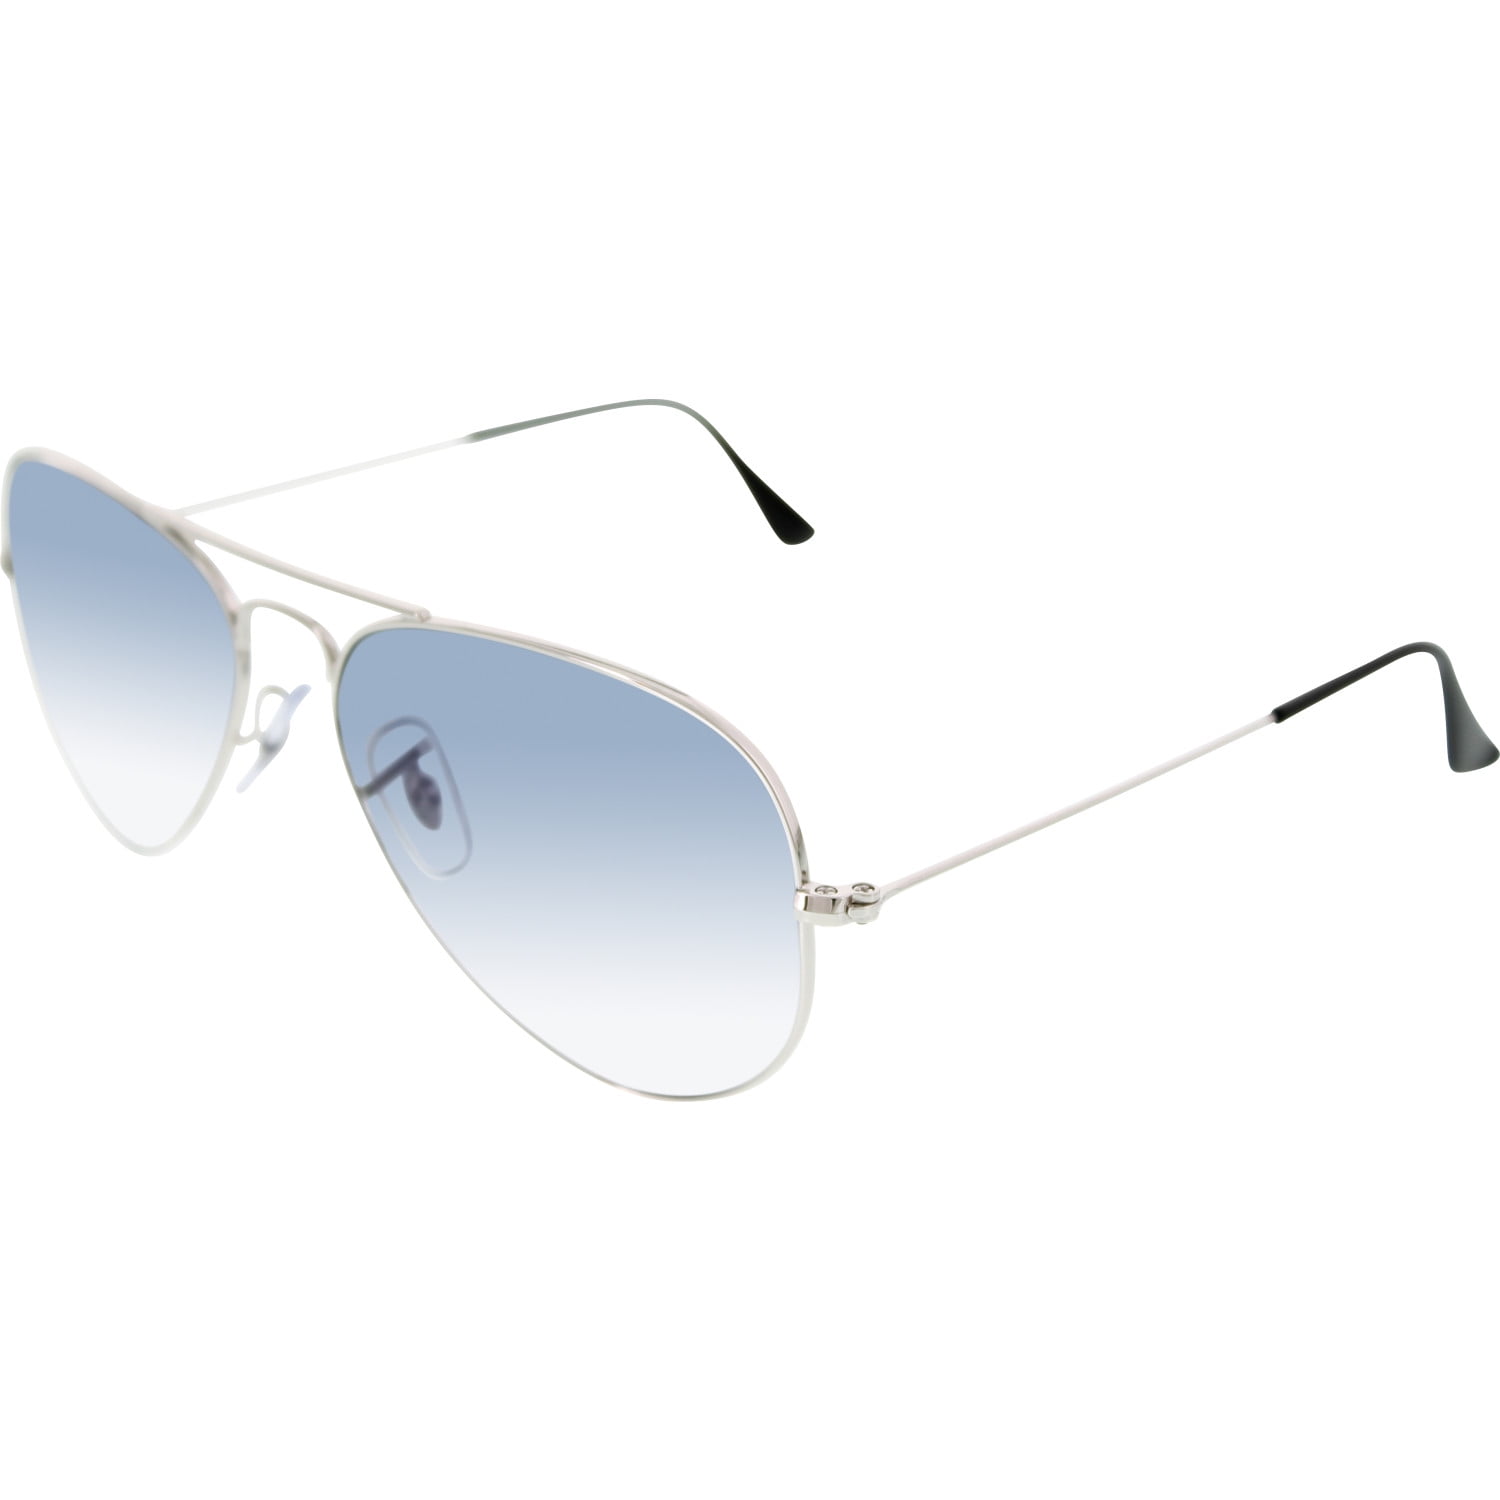 The Best Designer Aviator Sunglasses for Men and Women - GlassesUSA.com blog